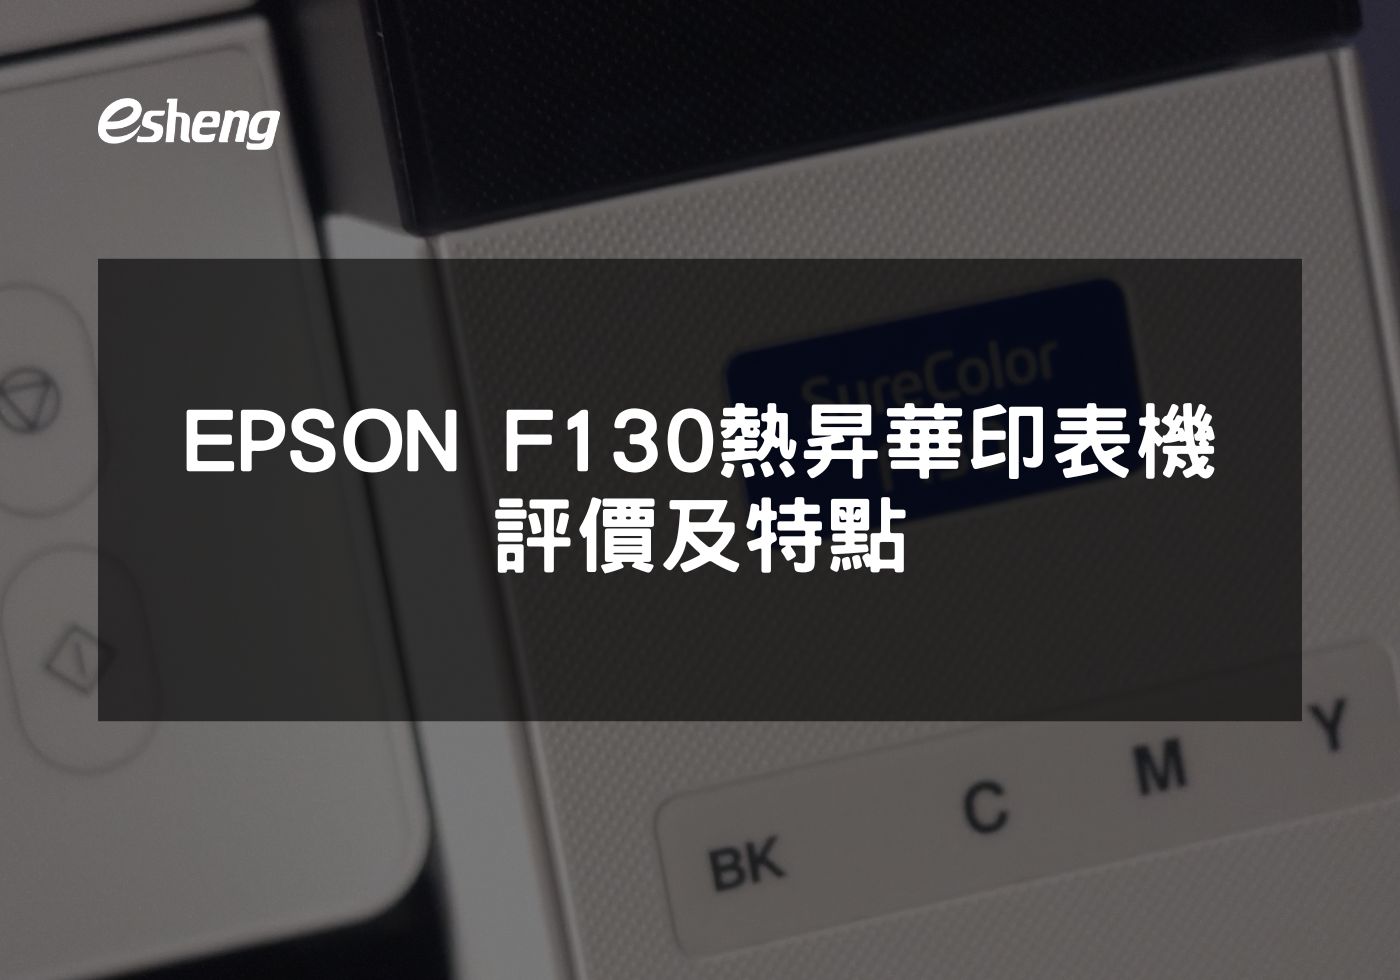 EPSON F130熱昇華印表機的多元應用與經濟效益